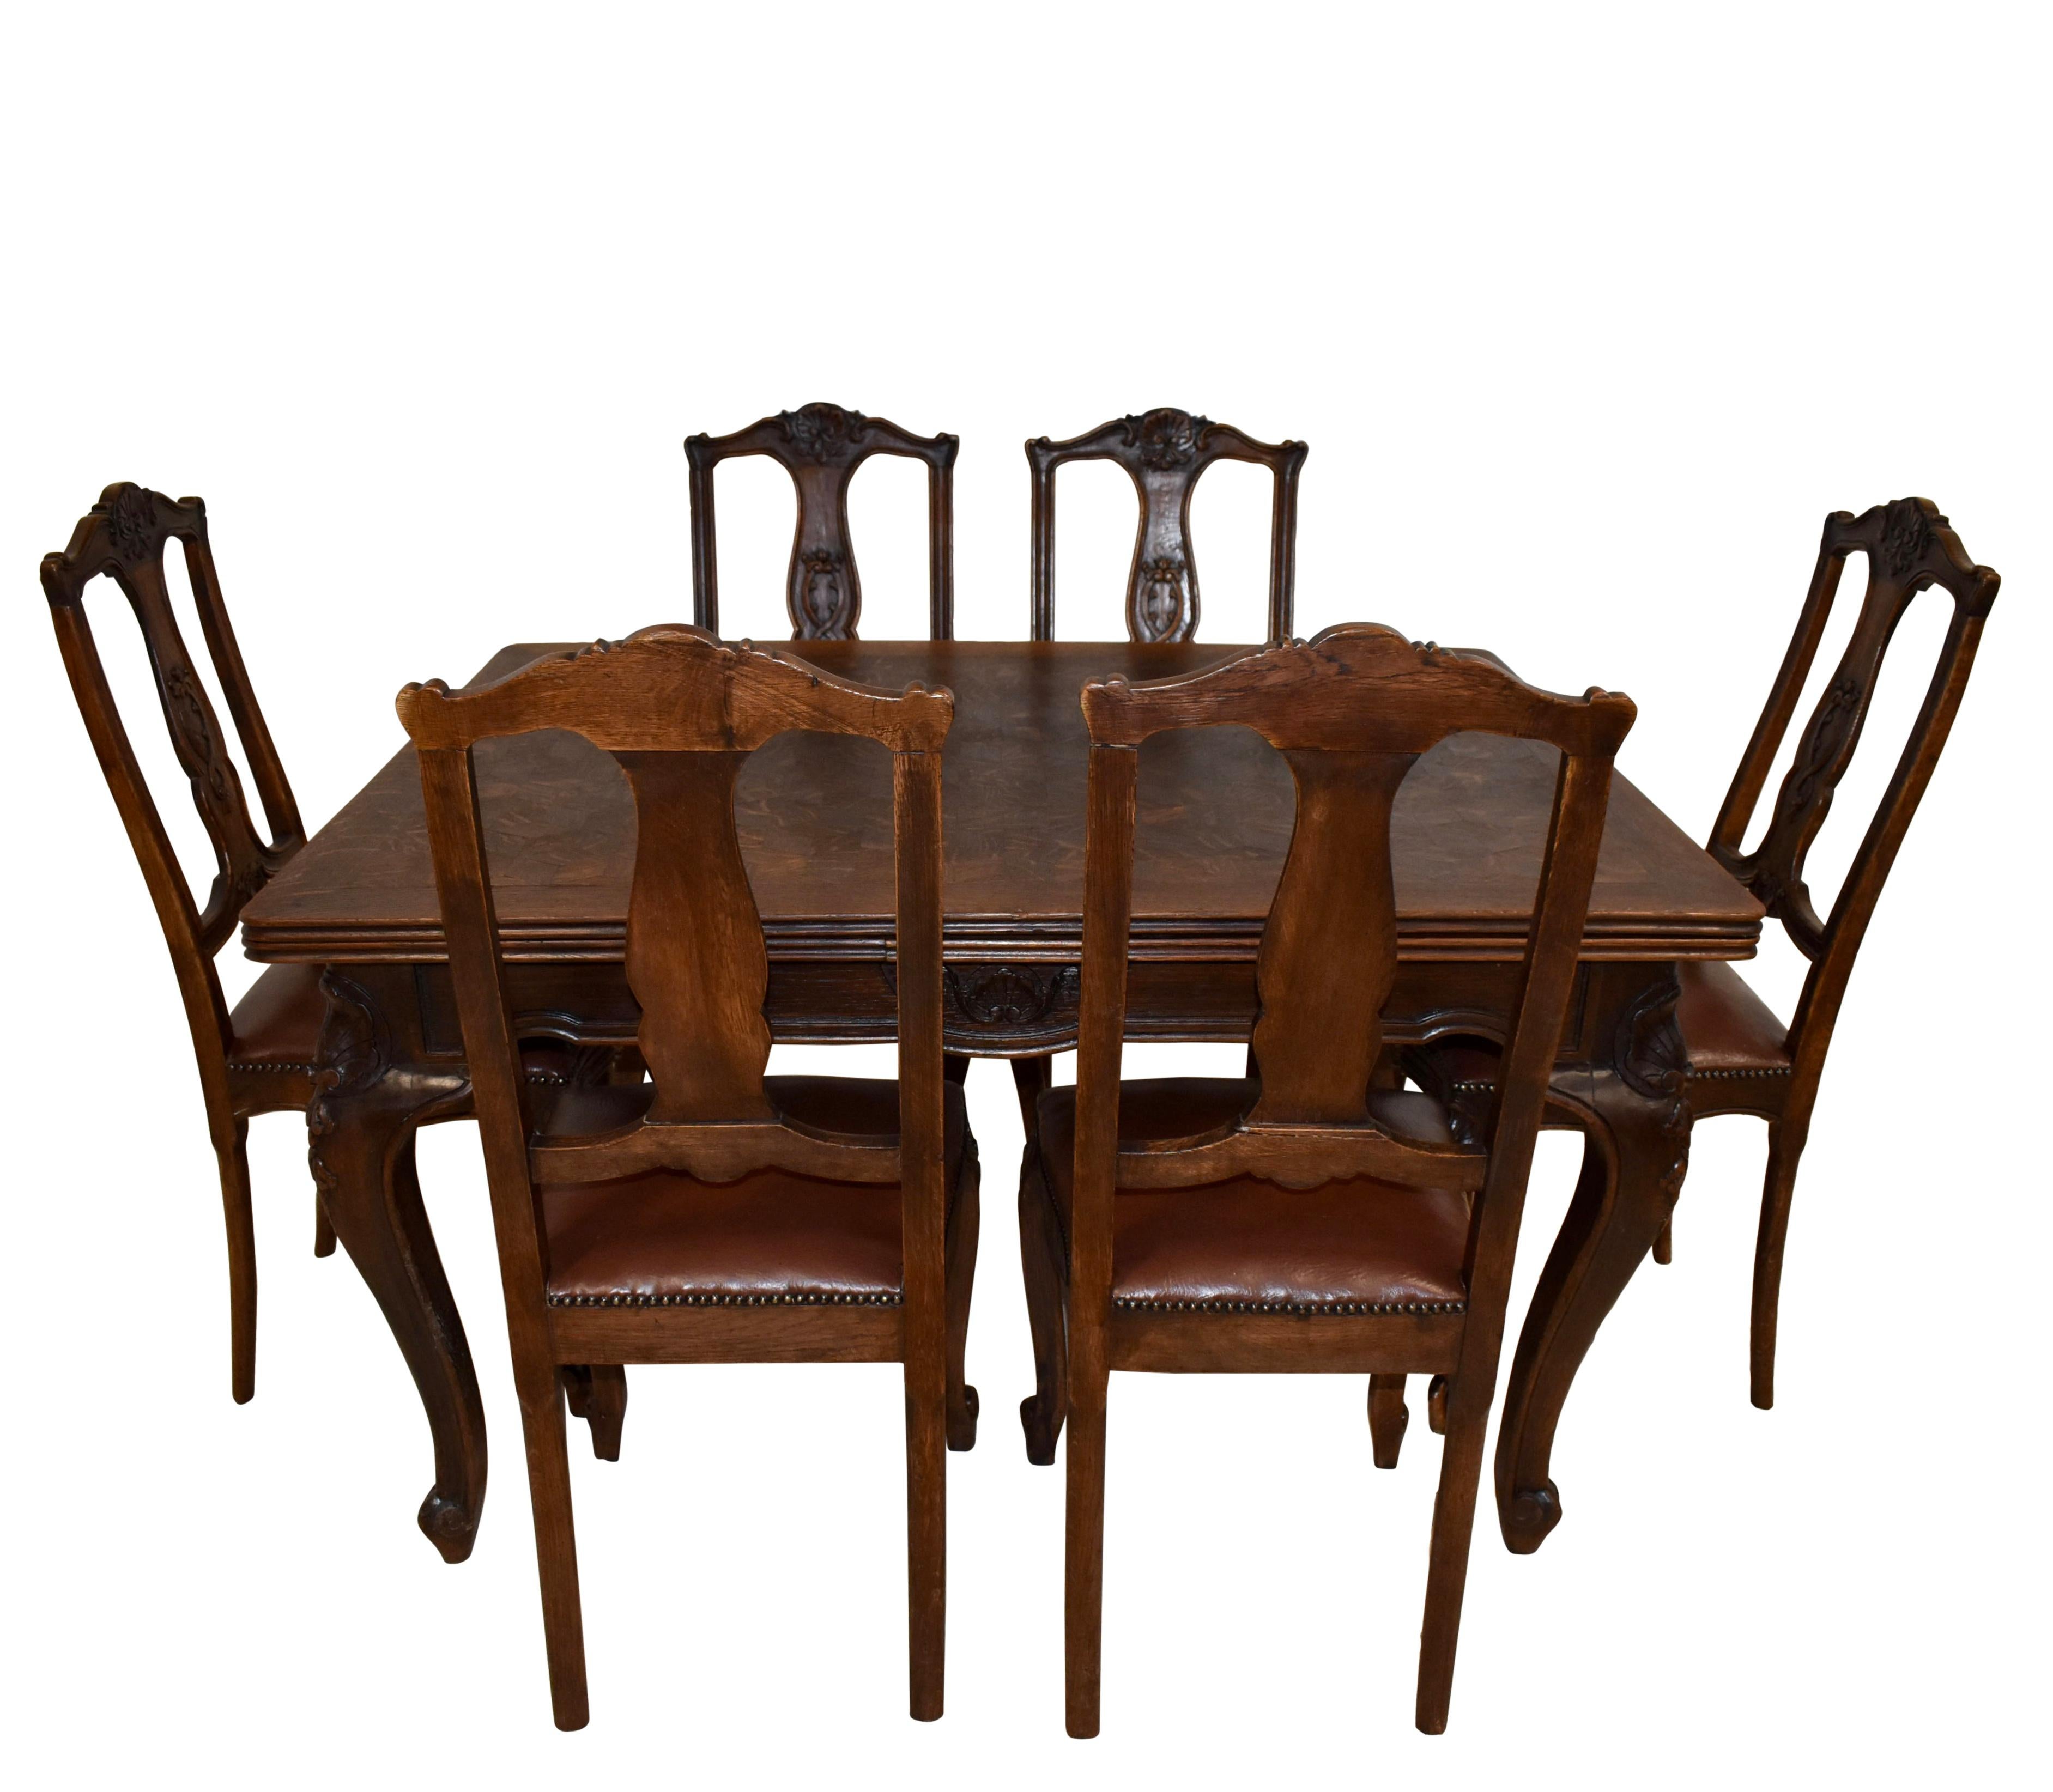 Dieses Esszimmer-Set aus Eichenholz besteht aus einem schönen Parkett-Tisch und sechs gepolsterten Stühlen und vereint Vielseitigkeit und Stil zu einem beeindruckenden Set. Das Parkett des Tisches ist aus quartiersgesägter Eiche gefertigt, die eine